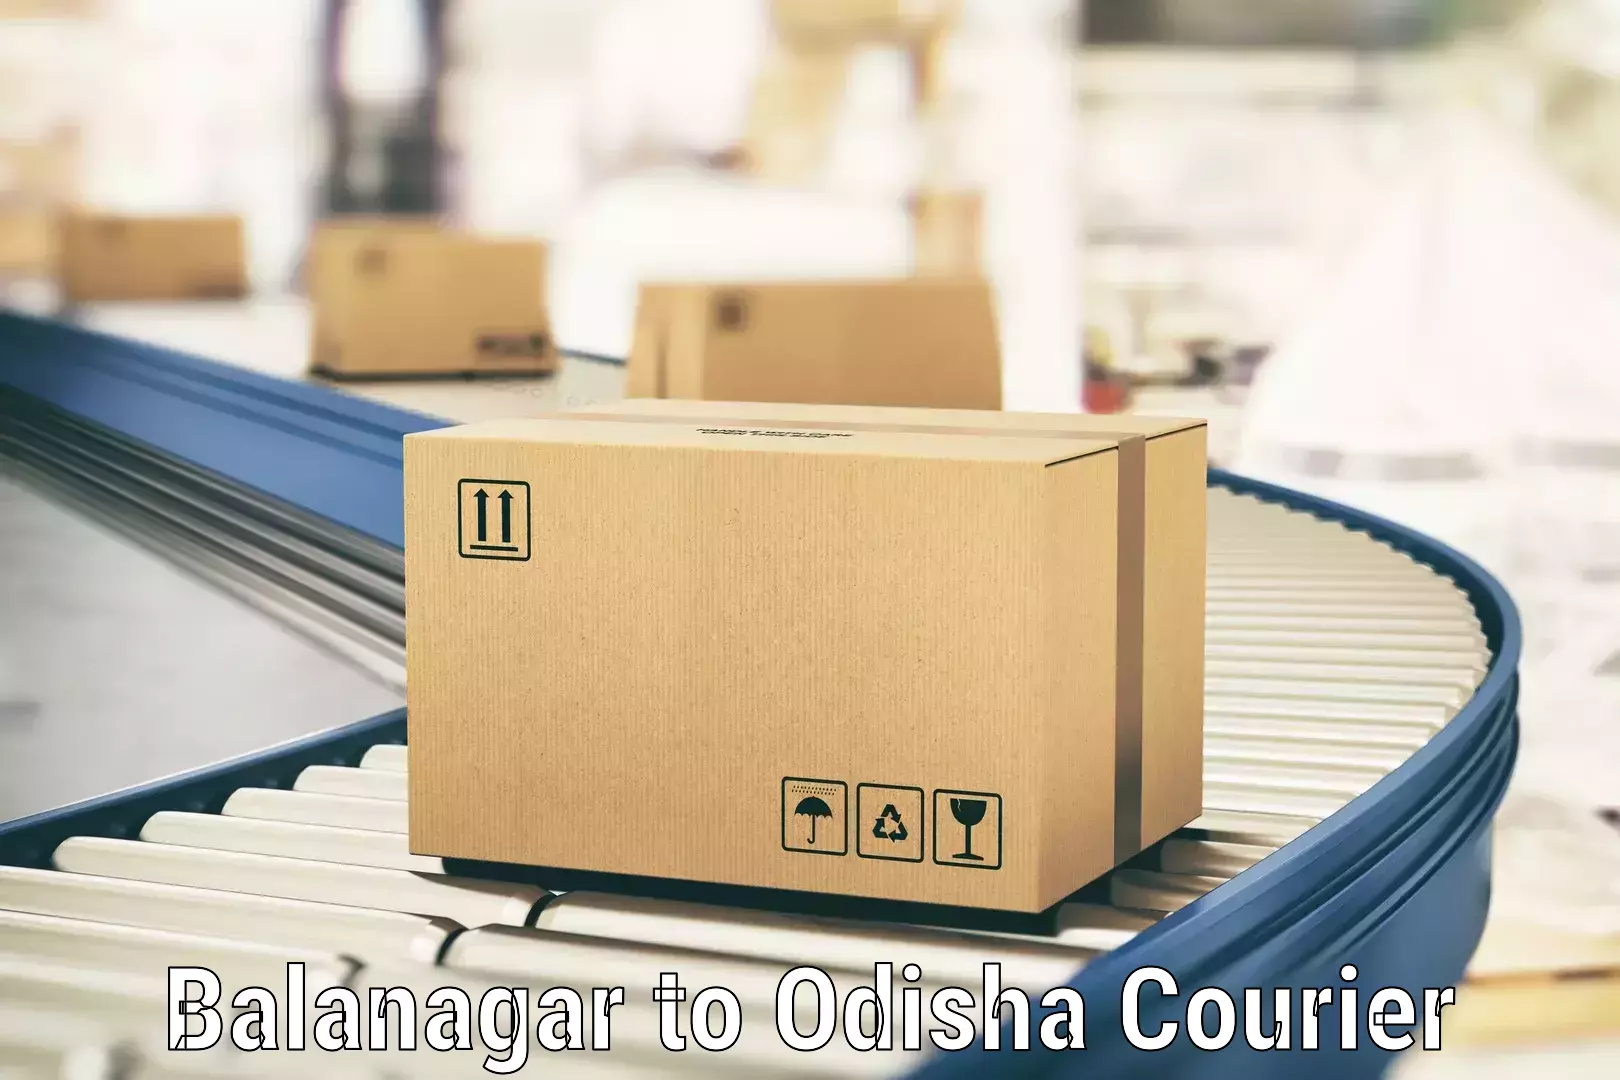 Urban courier service Balanagar to Balliguda